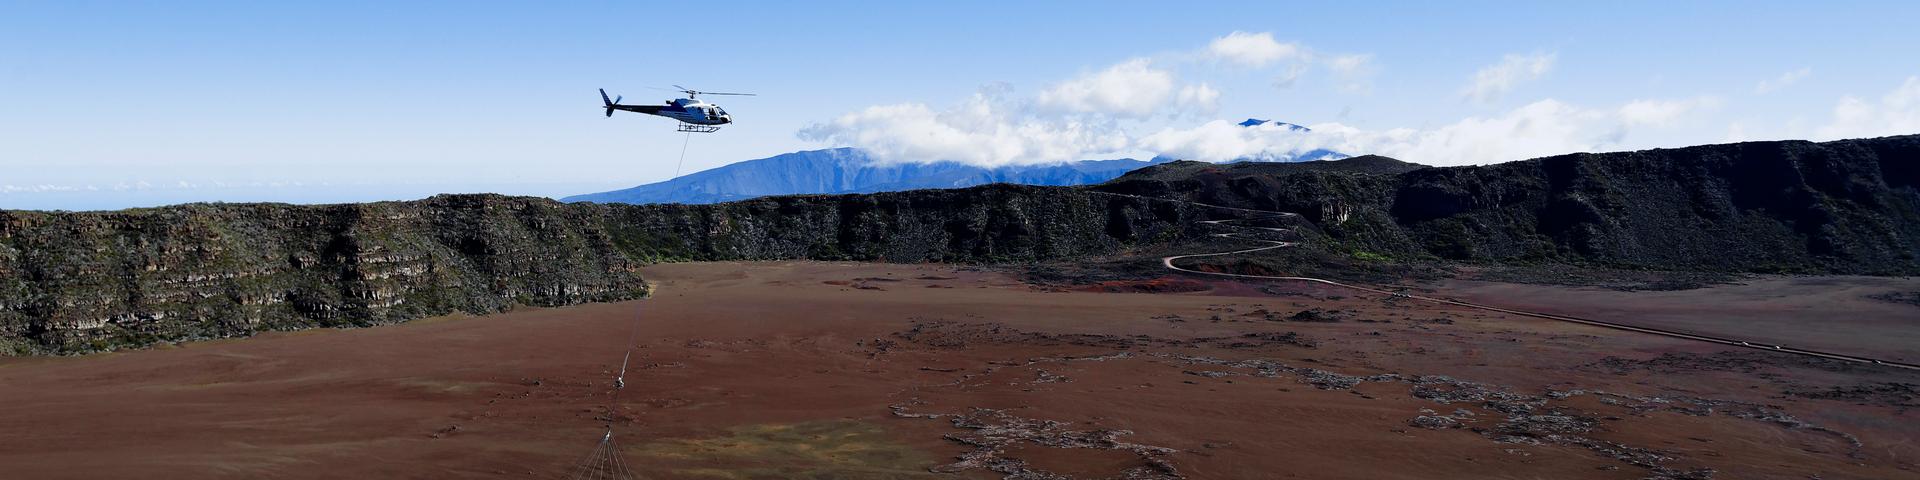 Campagne ReunEM de géophysique héliportée, Réunion